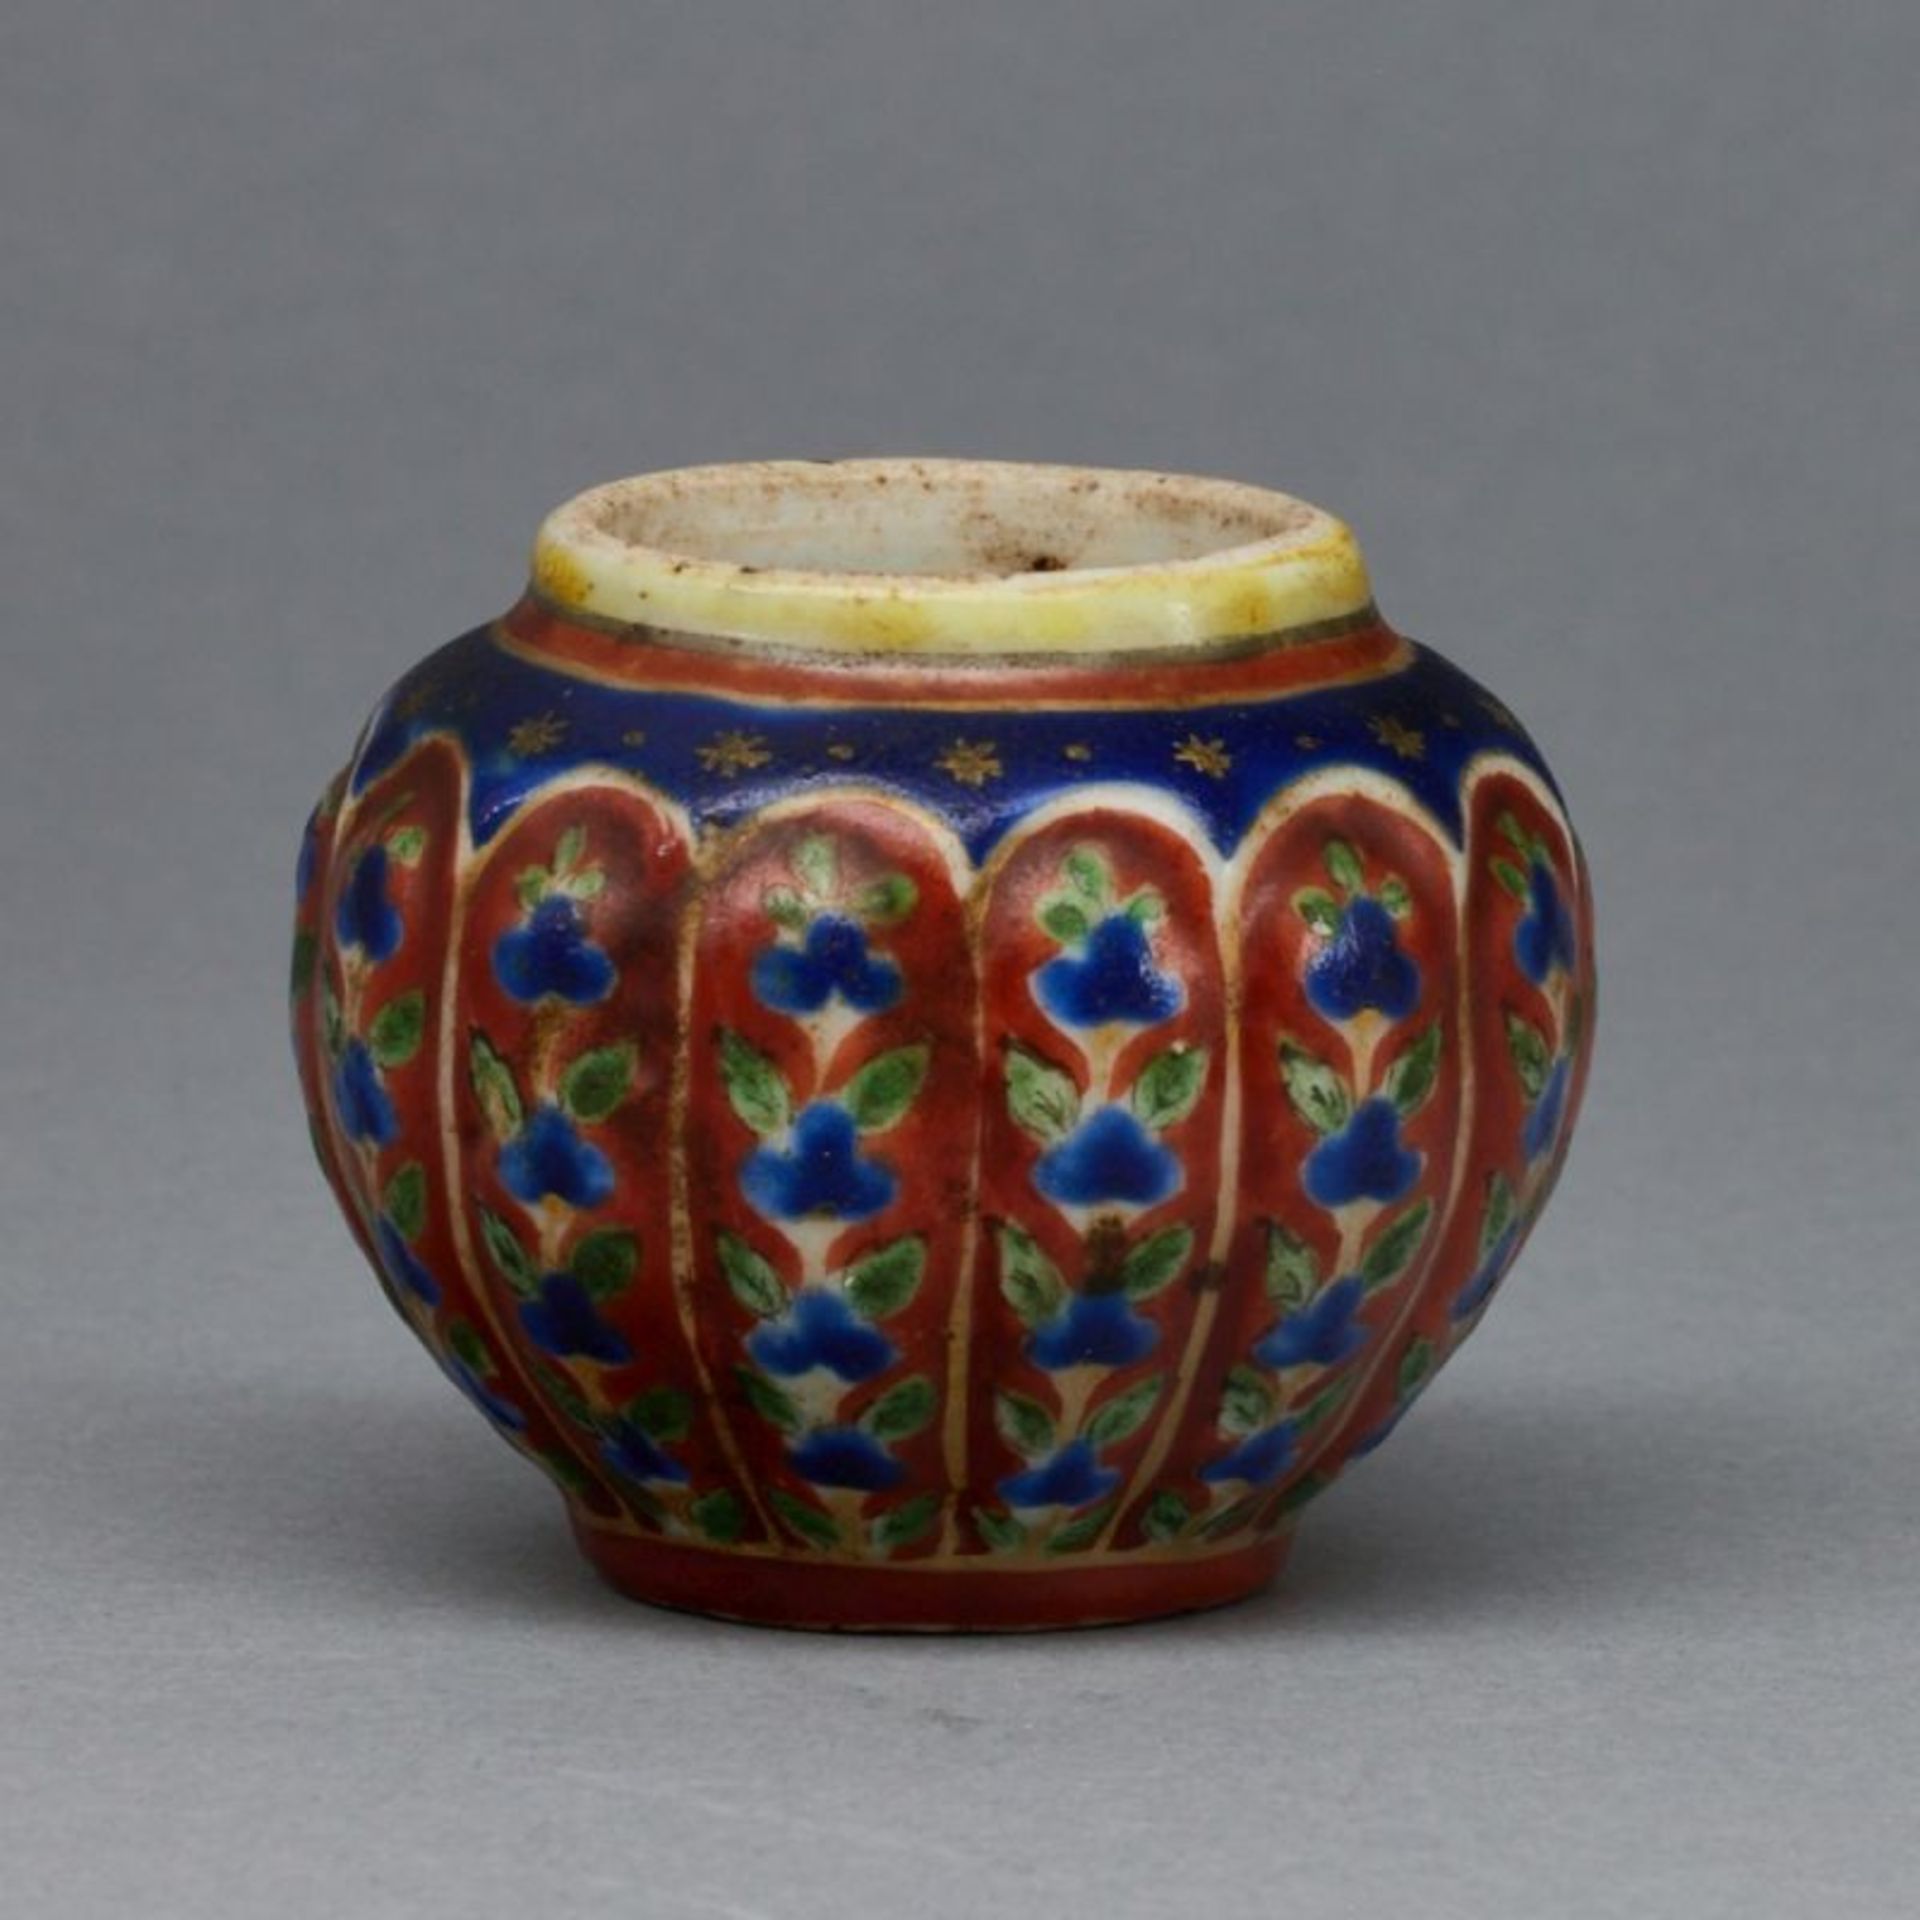 Kleiner Wasserbehälter / kleine Vase, China, Qing Dynastie, Ende 18. Jahrhundert oder früher - Image 2 of 2